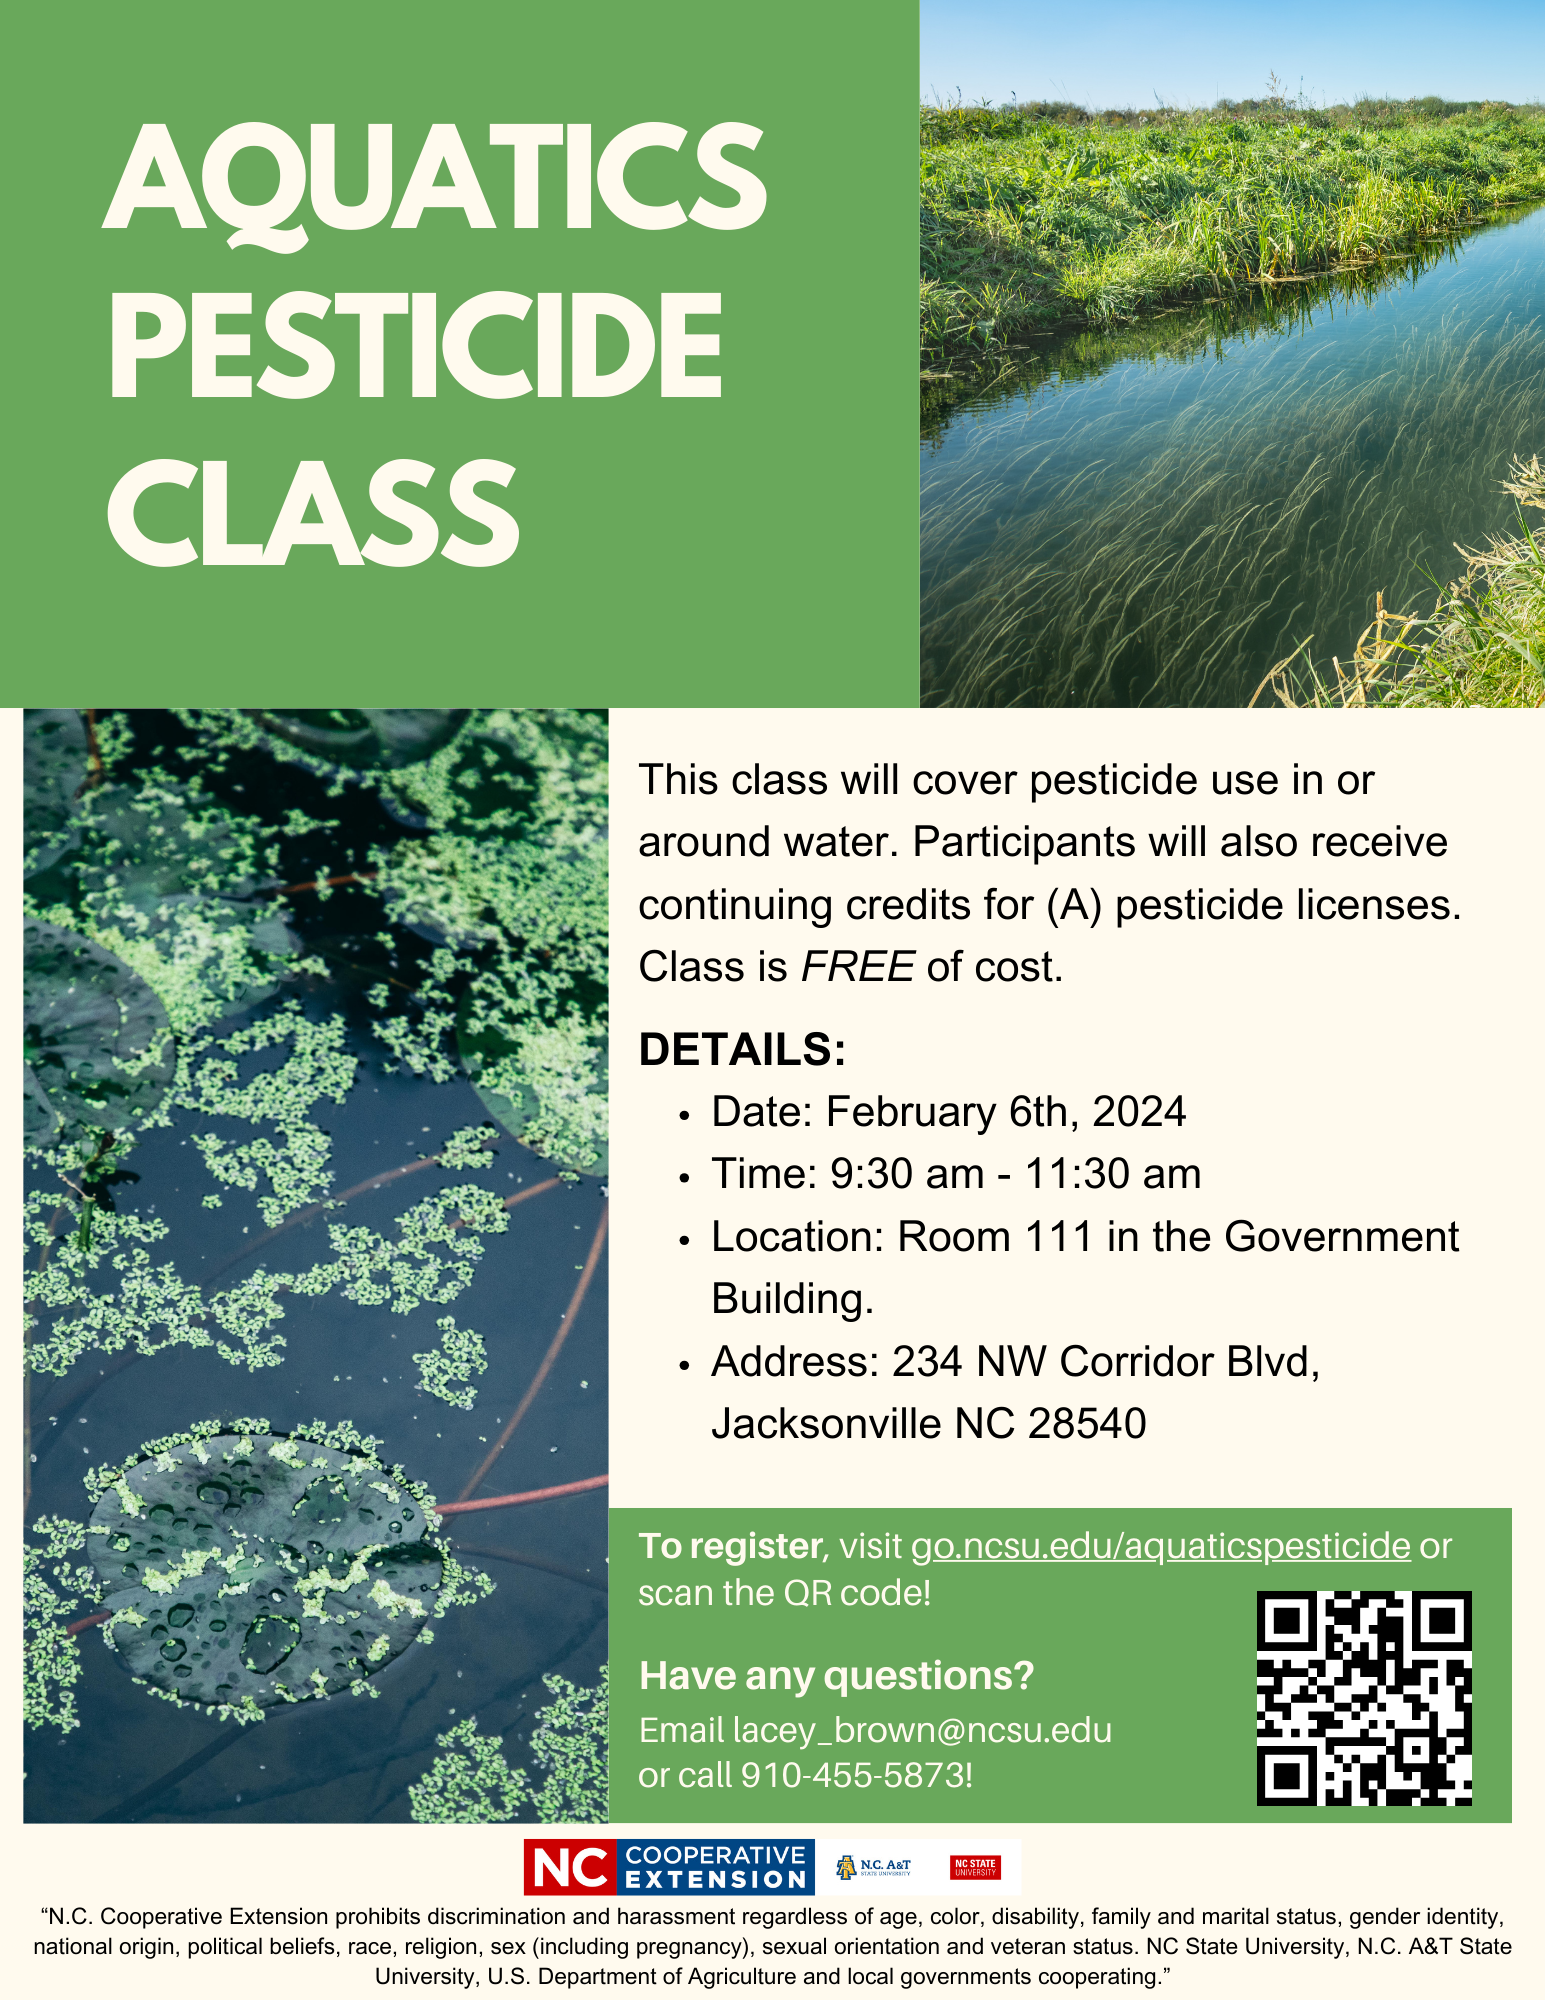 Aquatics Pesticide Class flyer